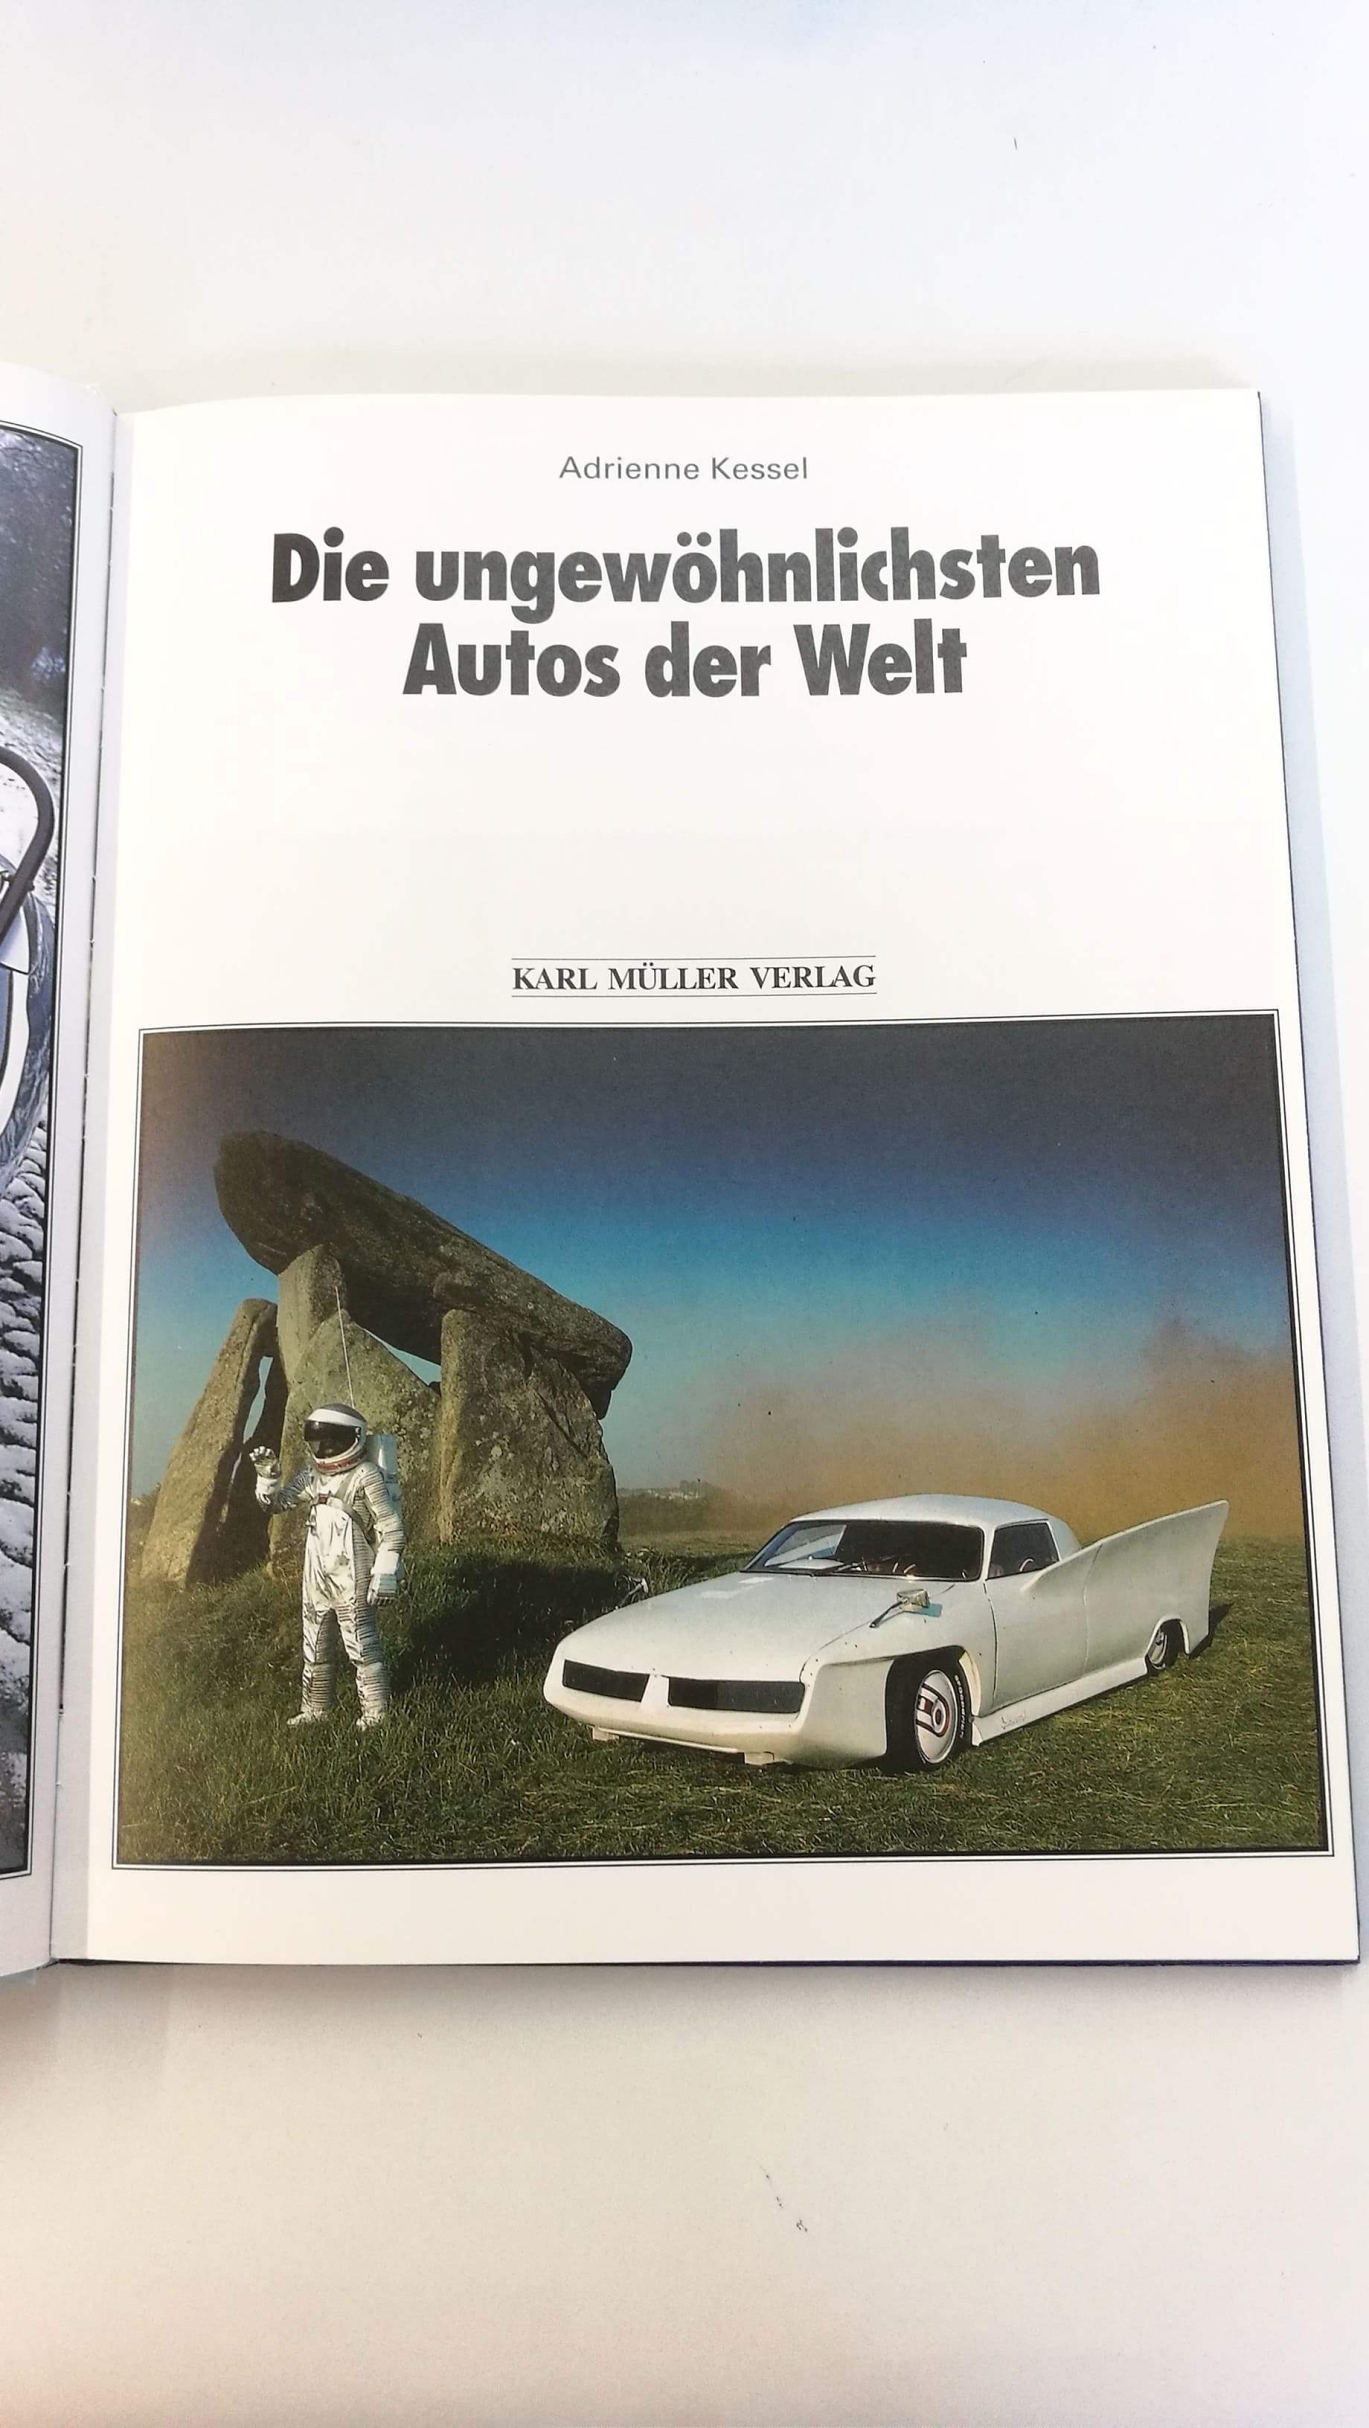 Kessel, Adrienne: Die ungewöhnlichsten Autos der Welt / Adrienne Kessel. [Übers. aus dem Engl. Manfred E. Friedrich